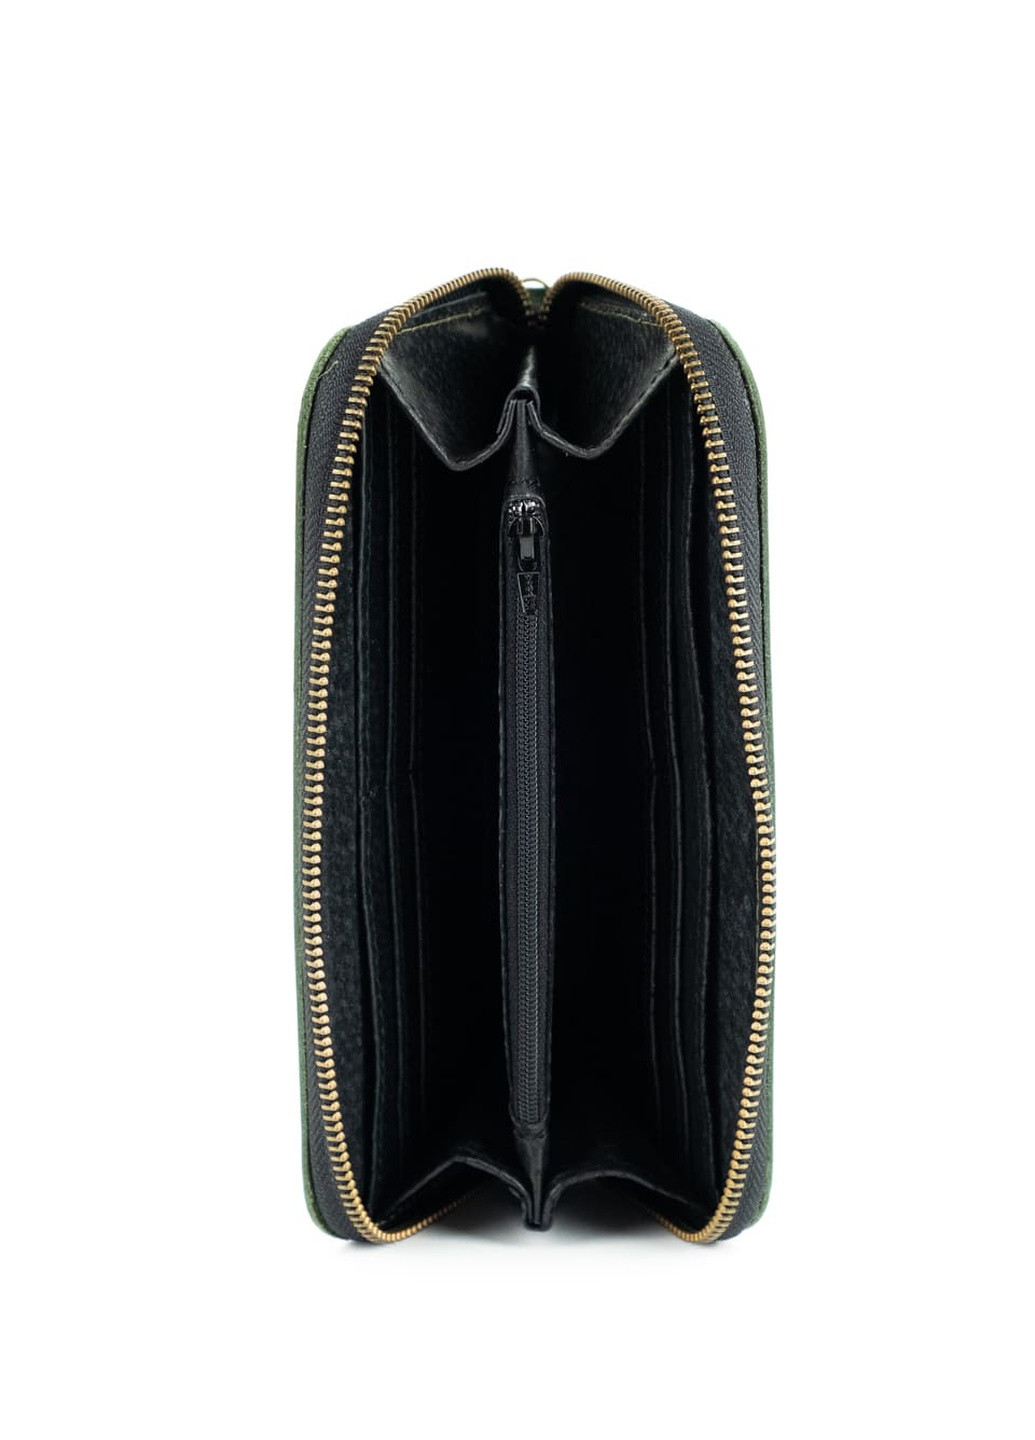 Кожаный портмоне кошелек зиппер на молнии Teo зеленый винтажный Kozhanty (252315366)